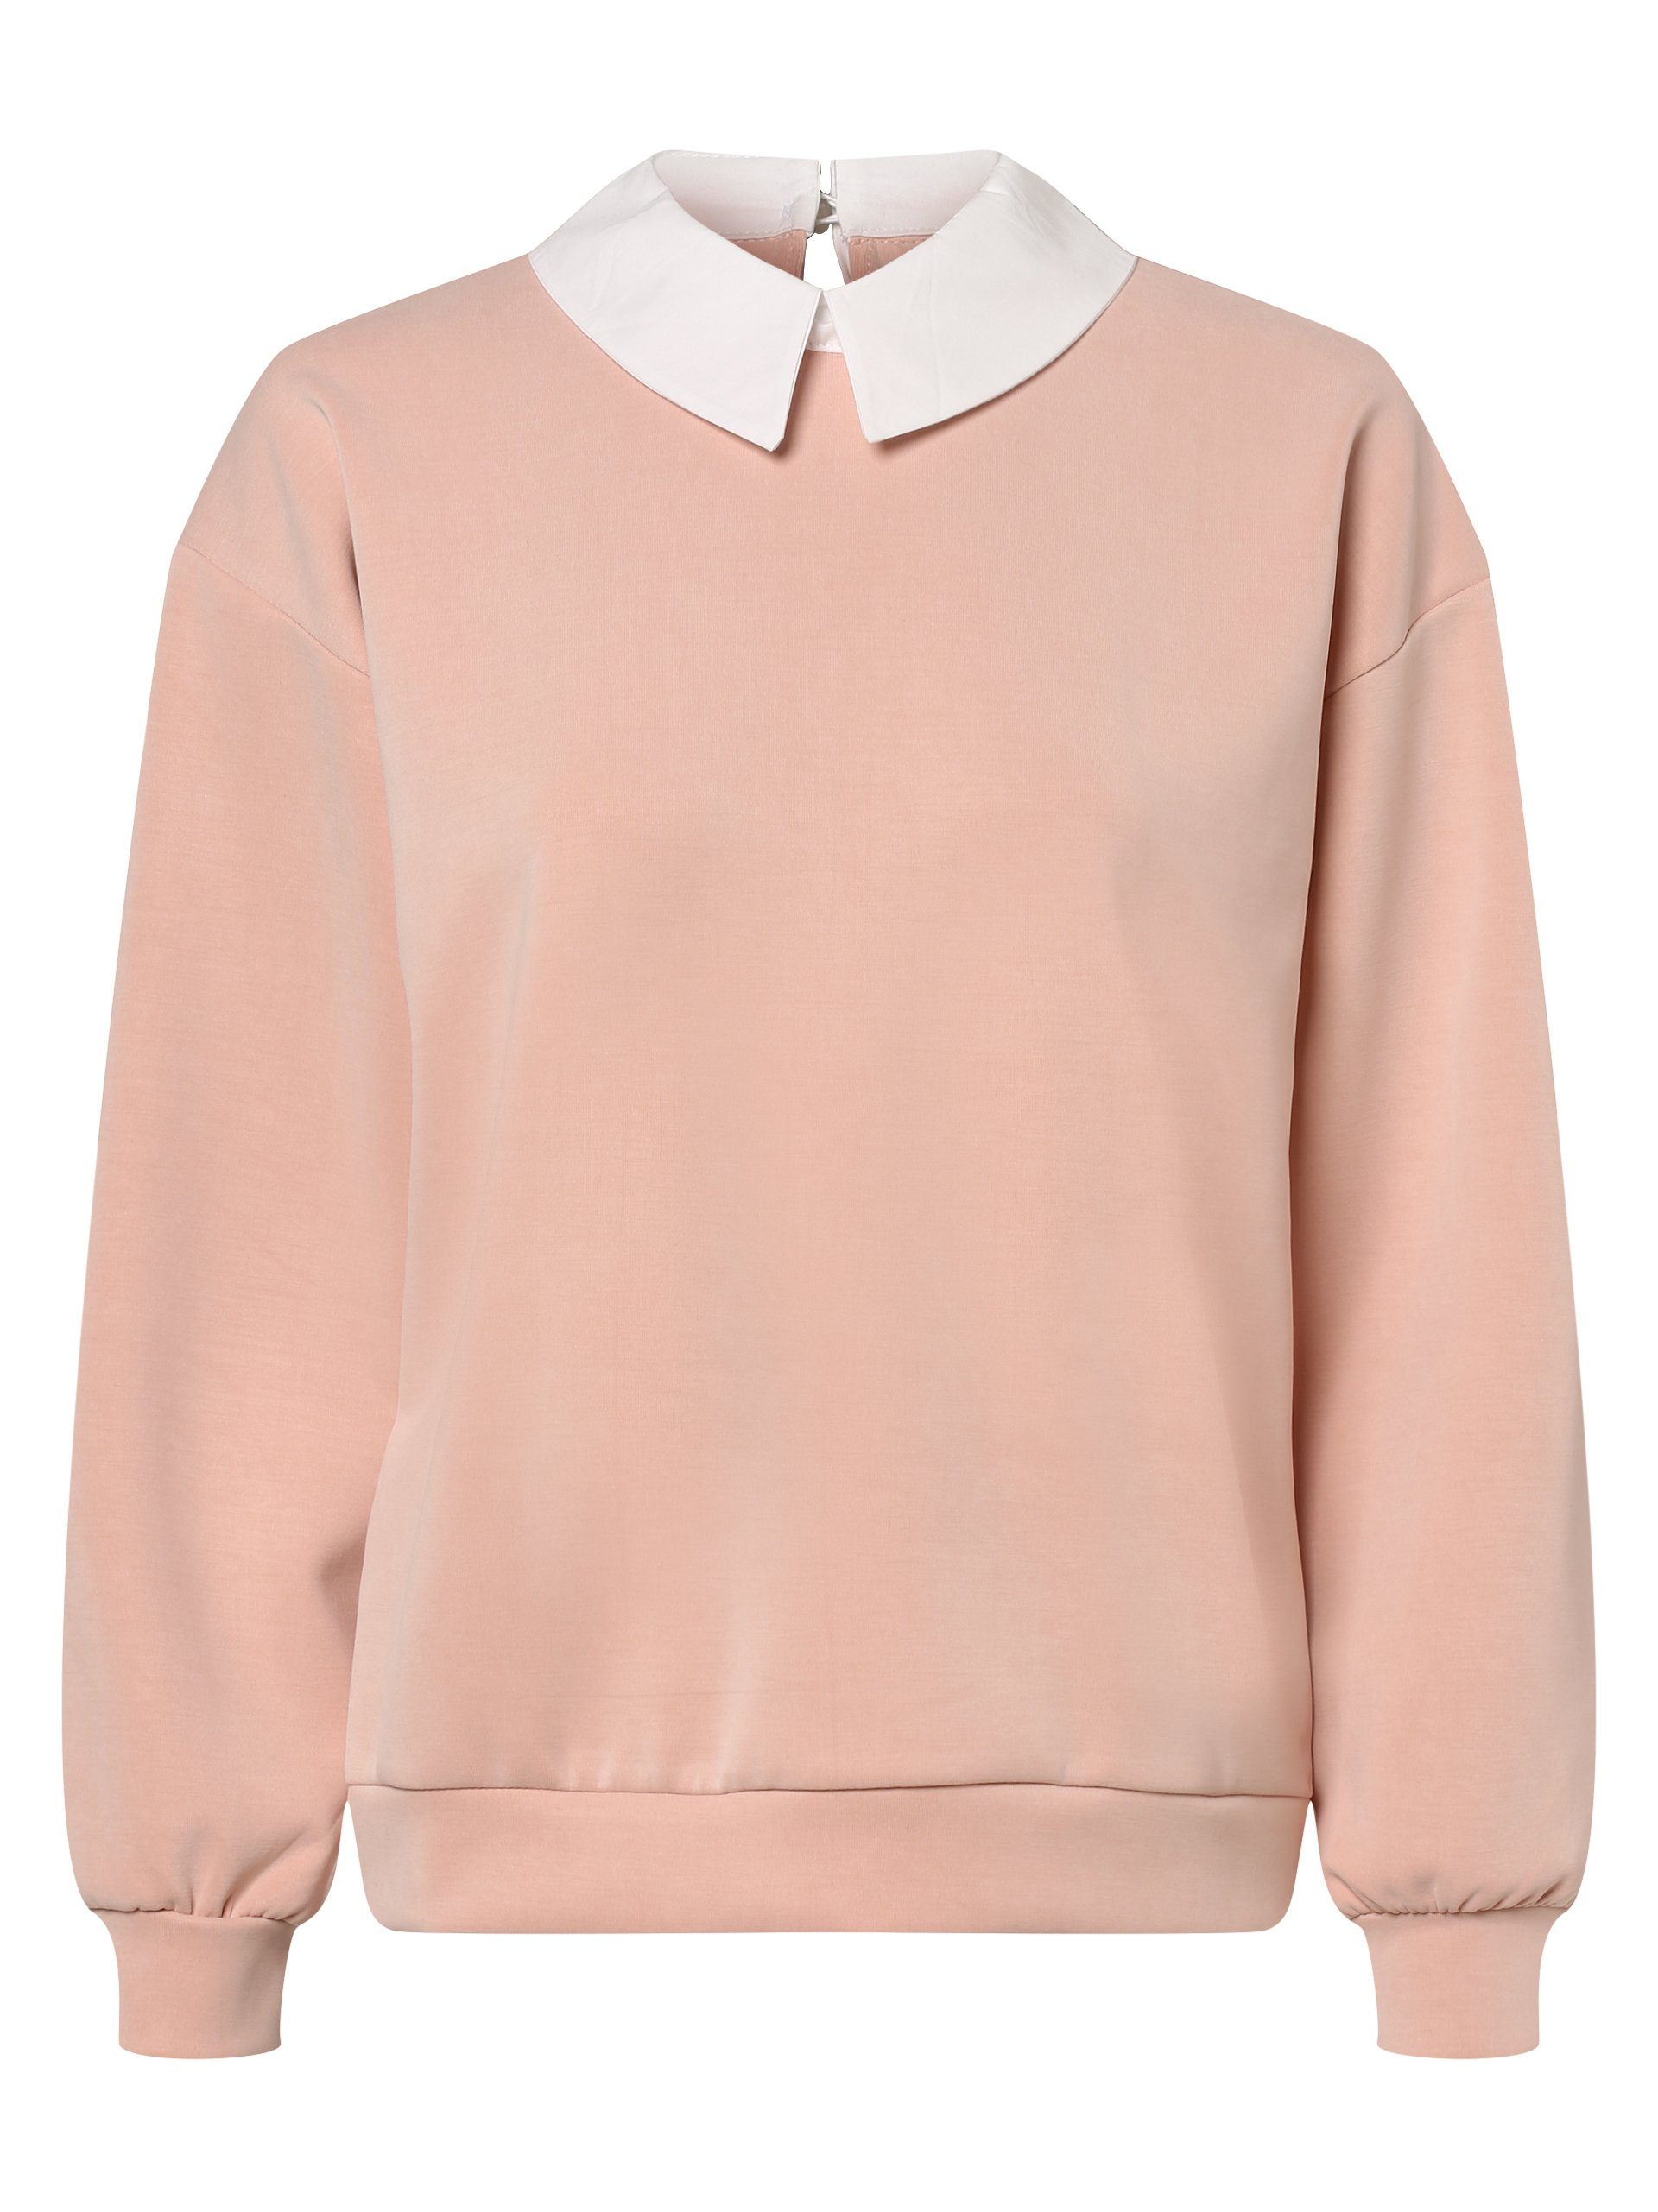 MORE&MORE Sweatshirt online kaufen | OTTO